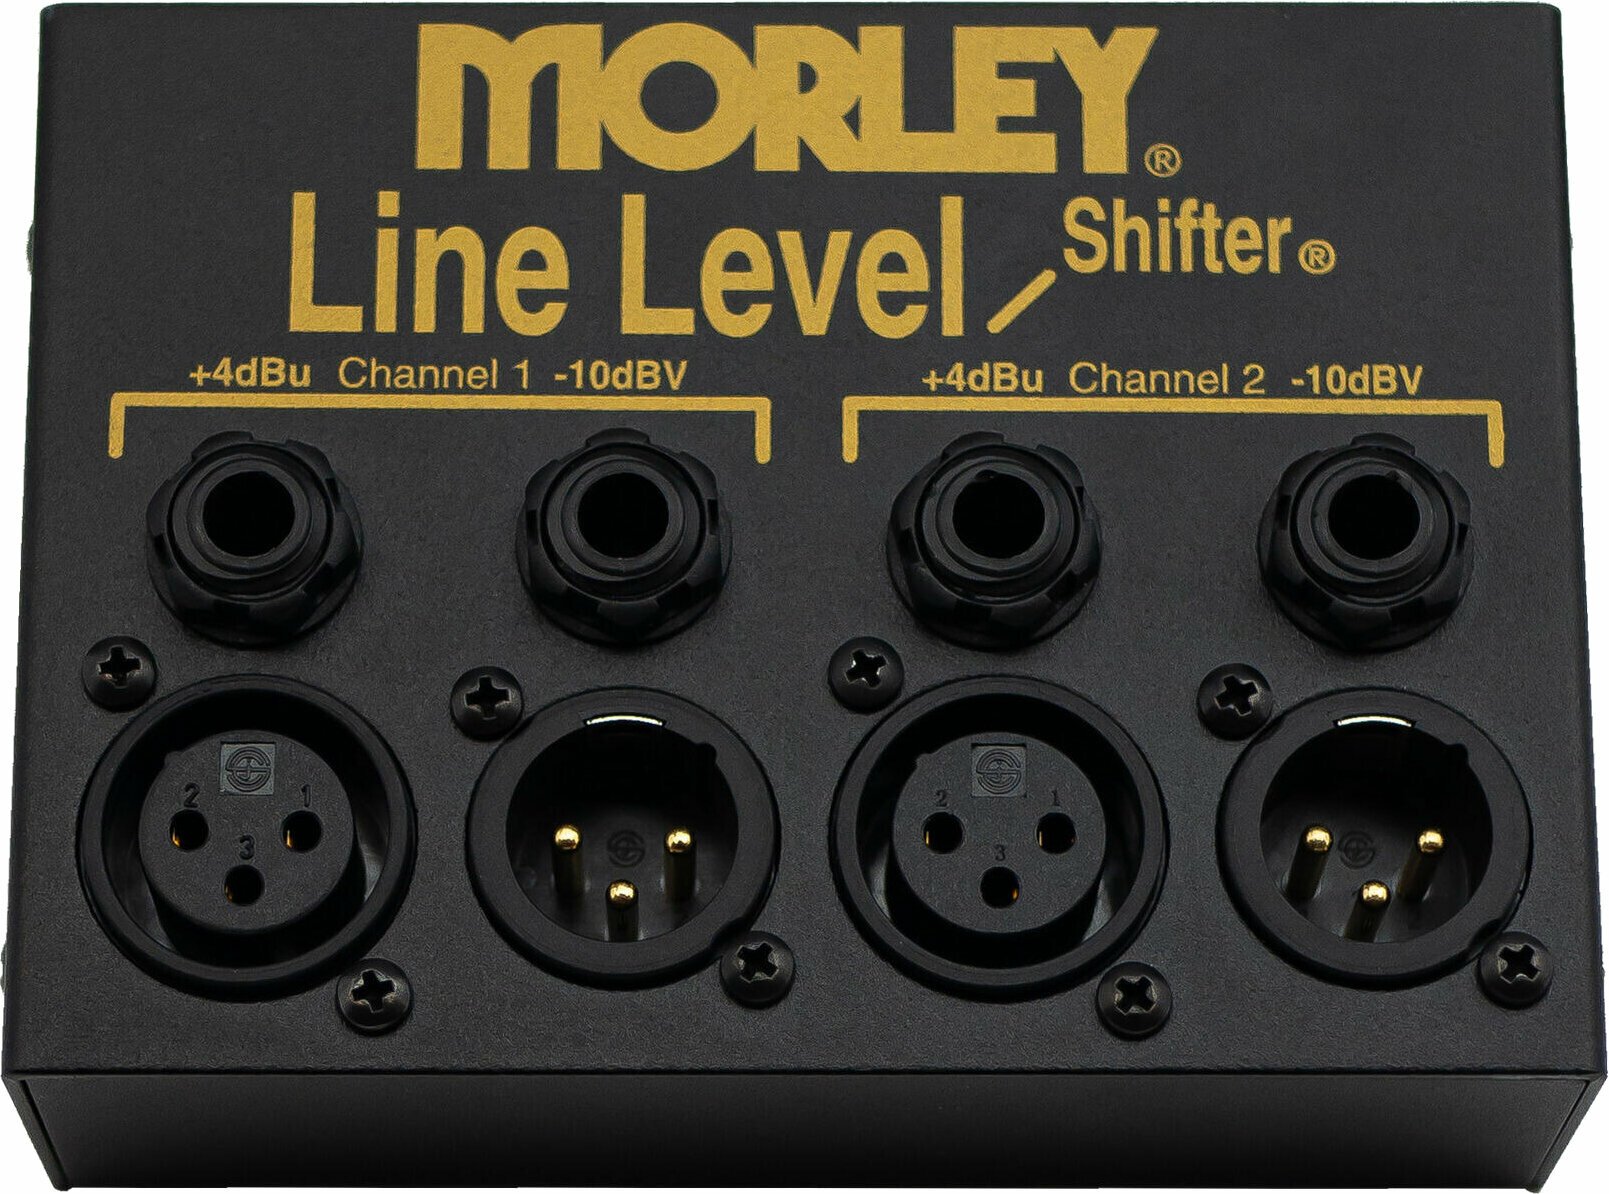 Zubehör Morley Line Level Shifter (Nur ausgepackt)